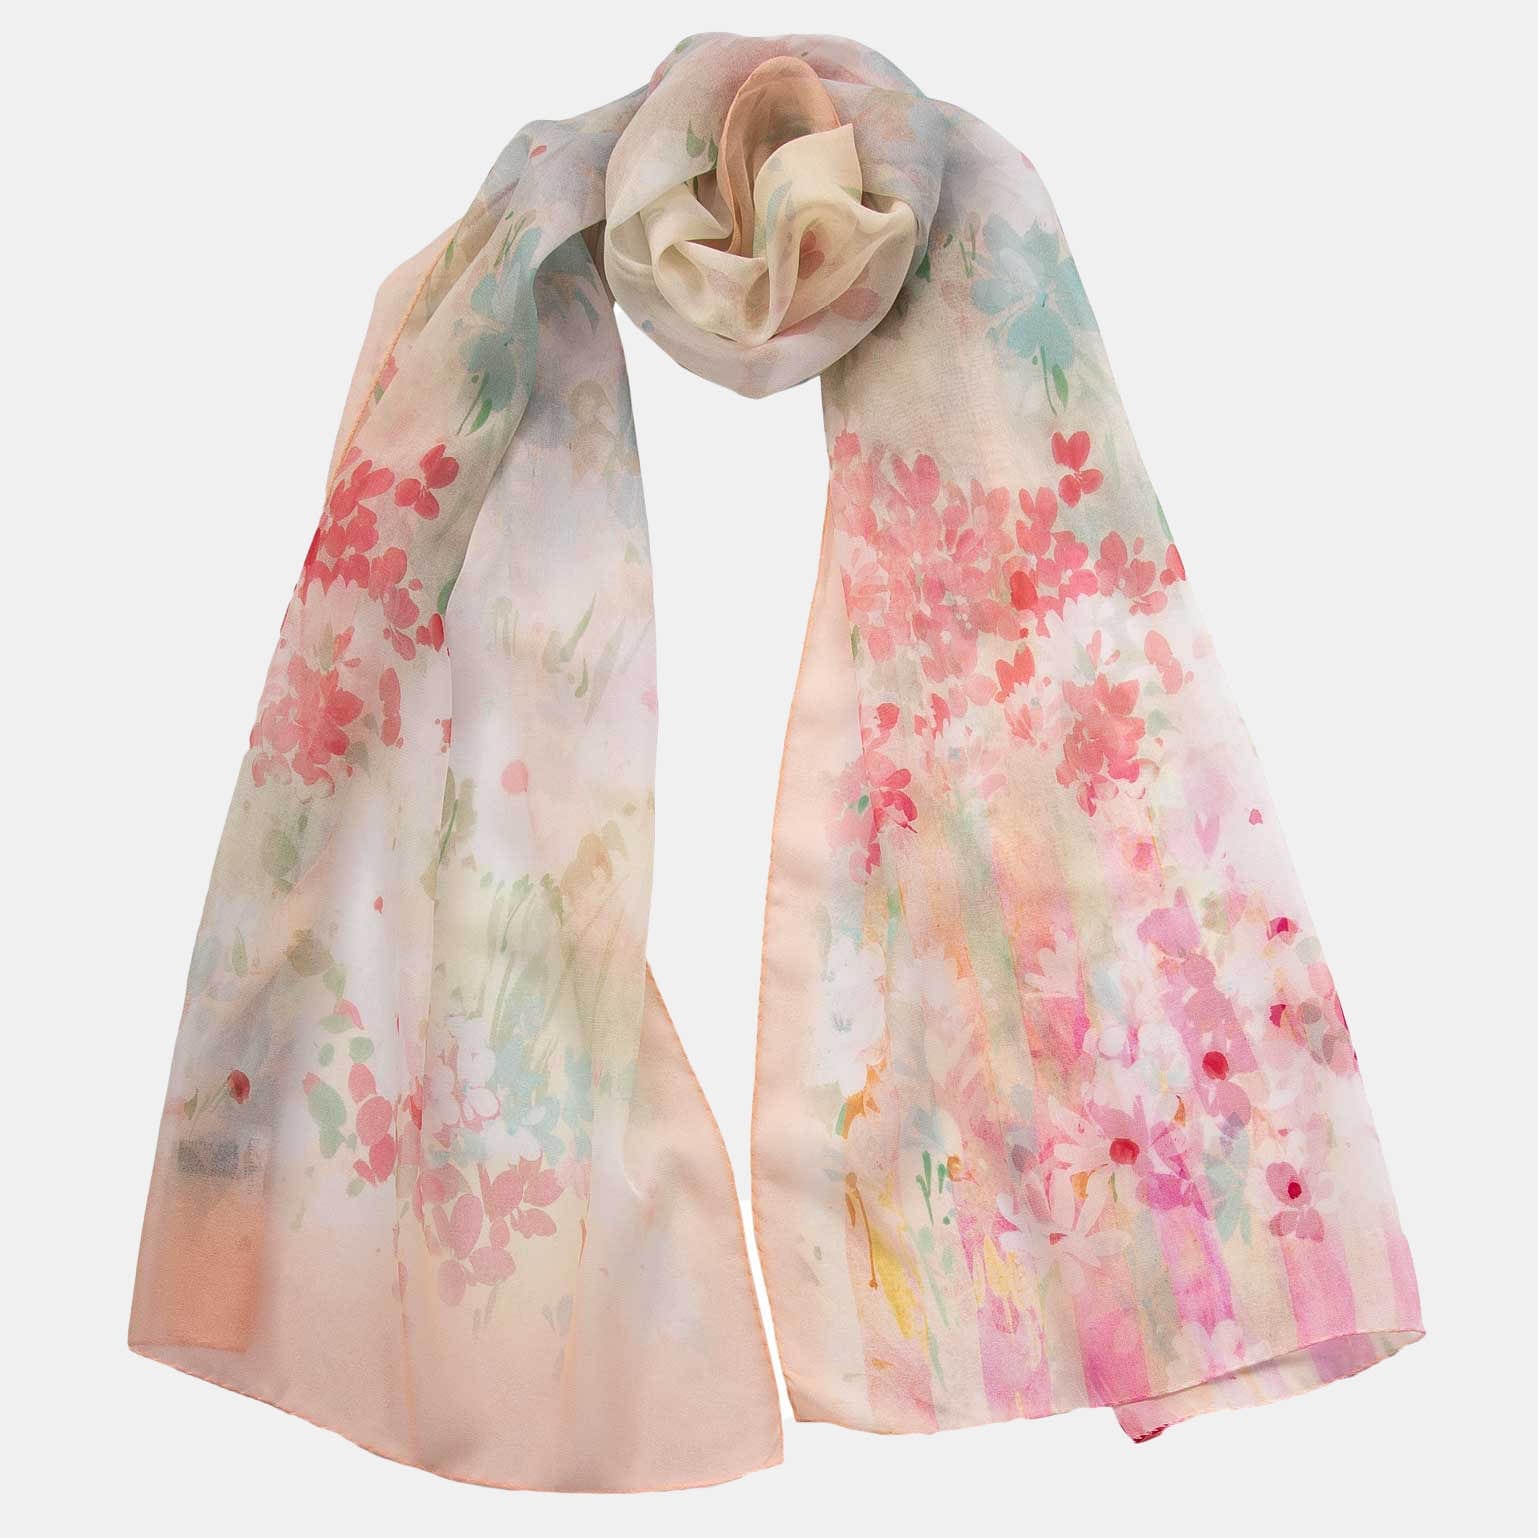 https://elizabetta.net/cdn/shop/products/italian-silk-scarf-for-ladies_79aef561-d05b-4f0c-b537-64c9e68264c7.jpg?v=1680772259